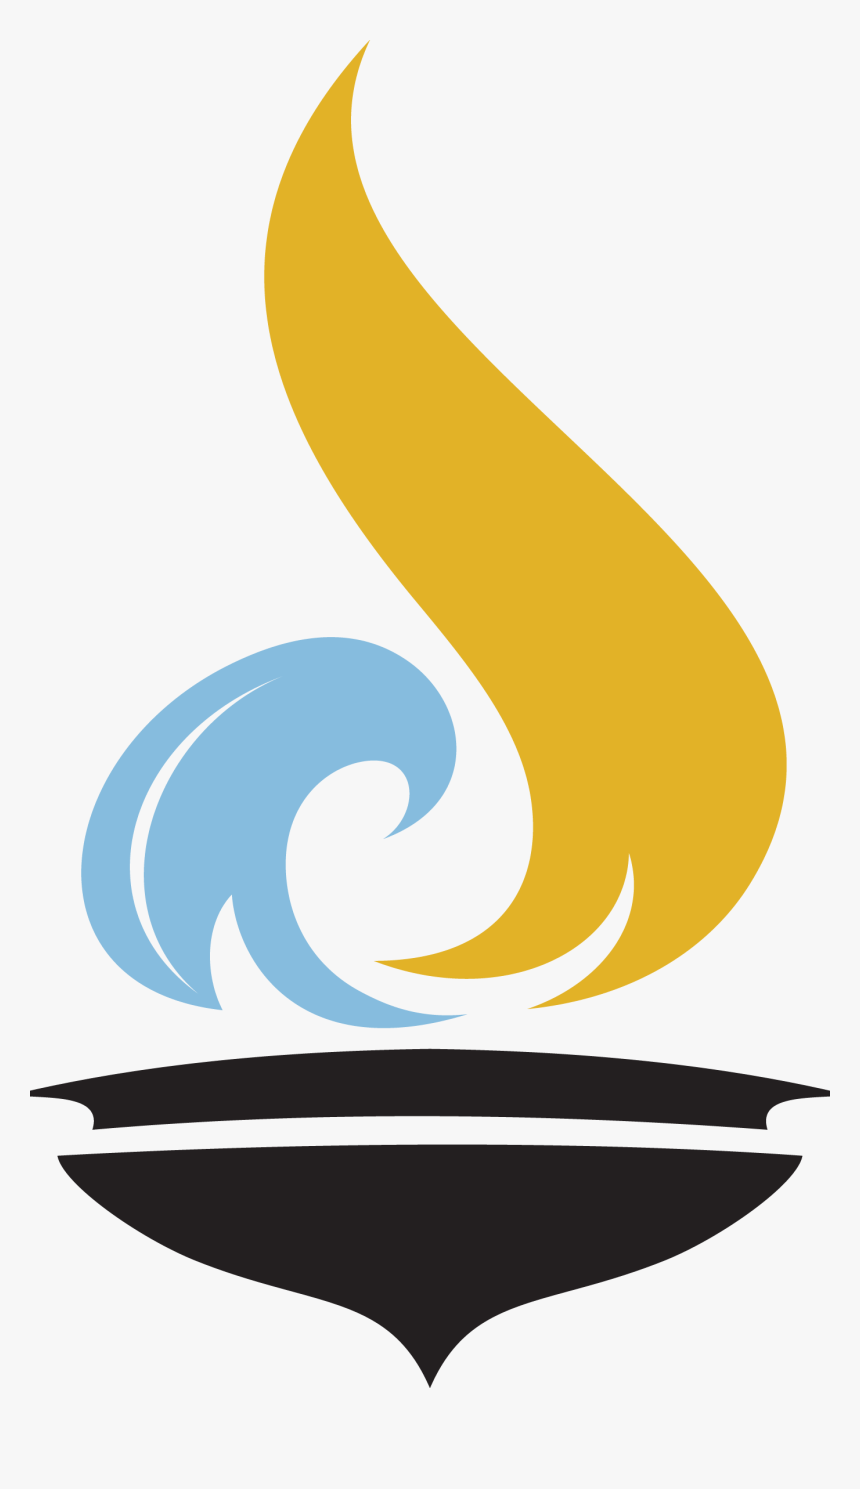 Marina Logo - Chabad Symbols, HD Png Download, Free Download